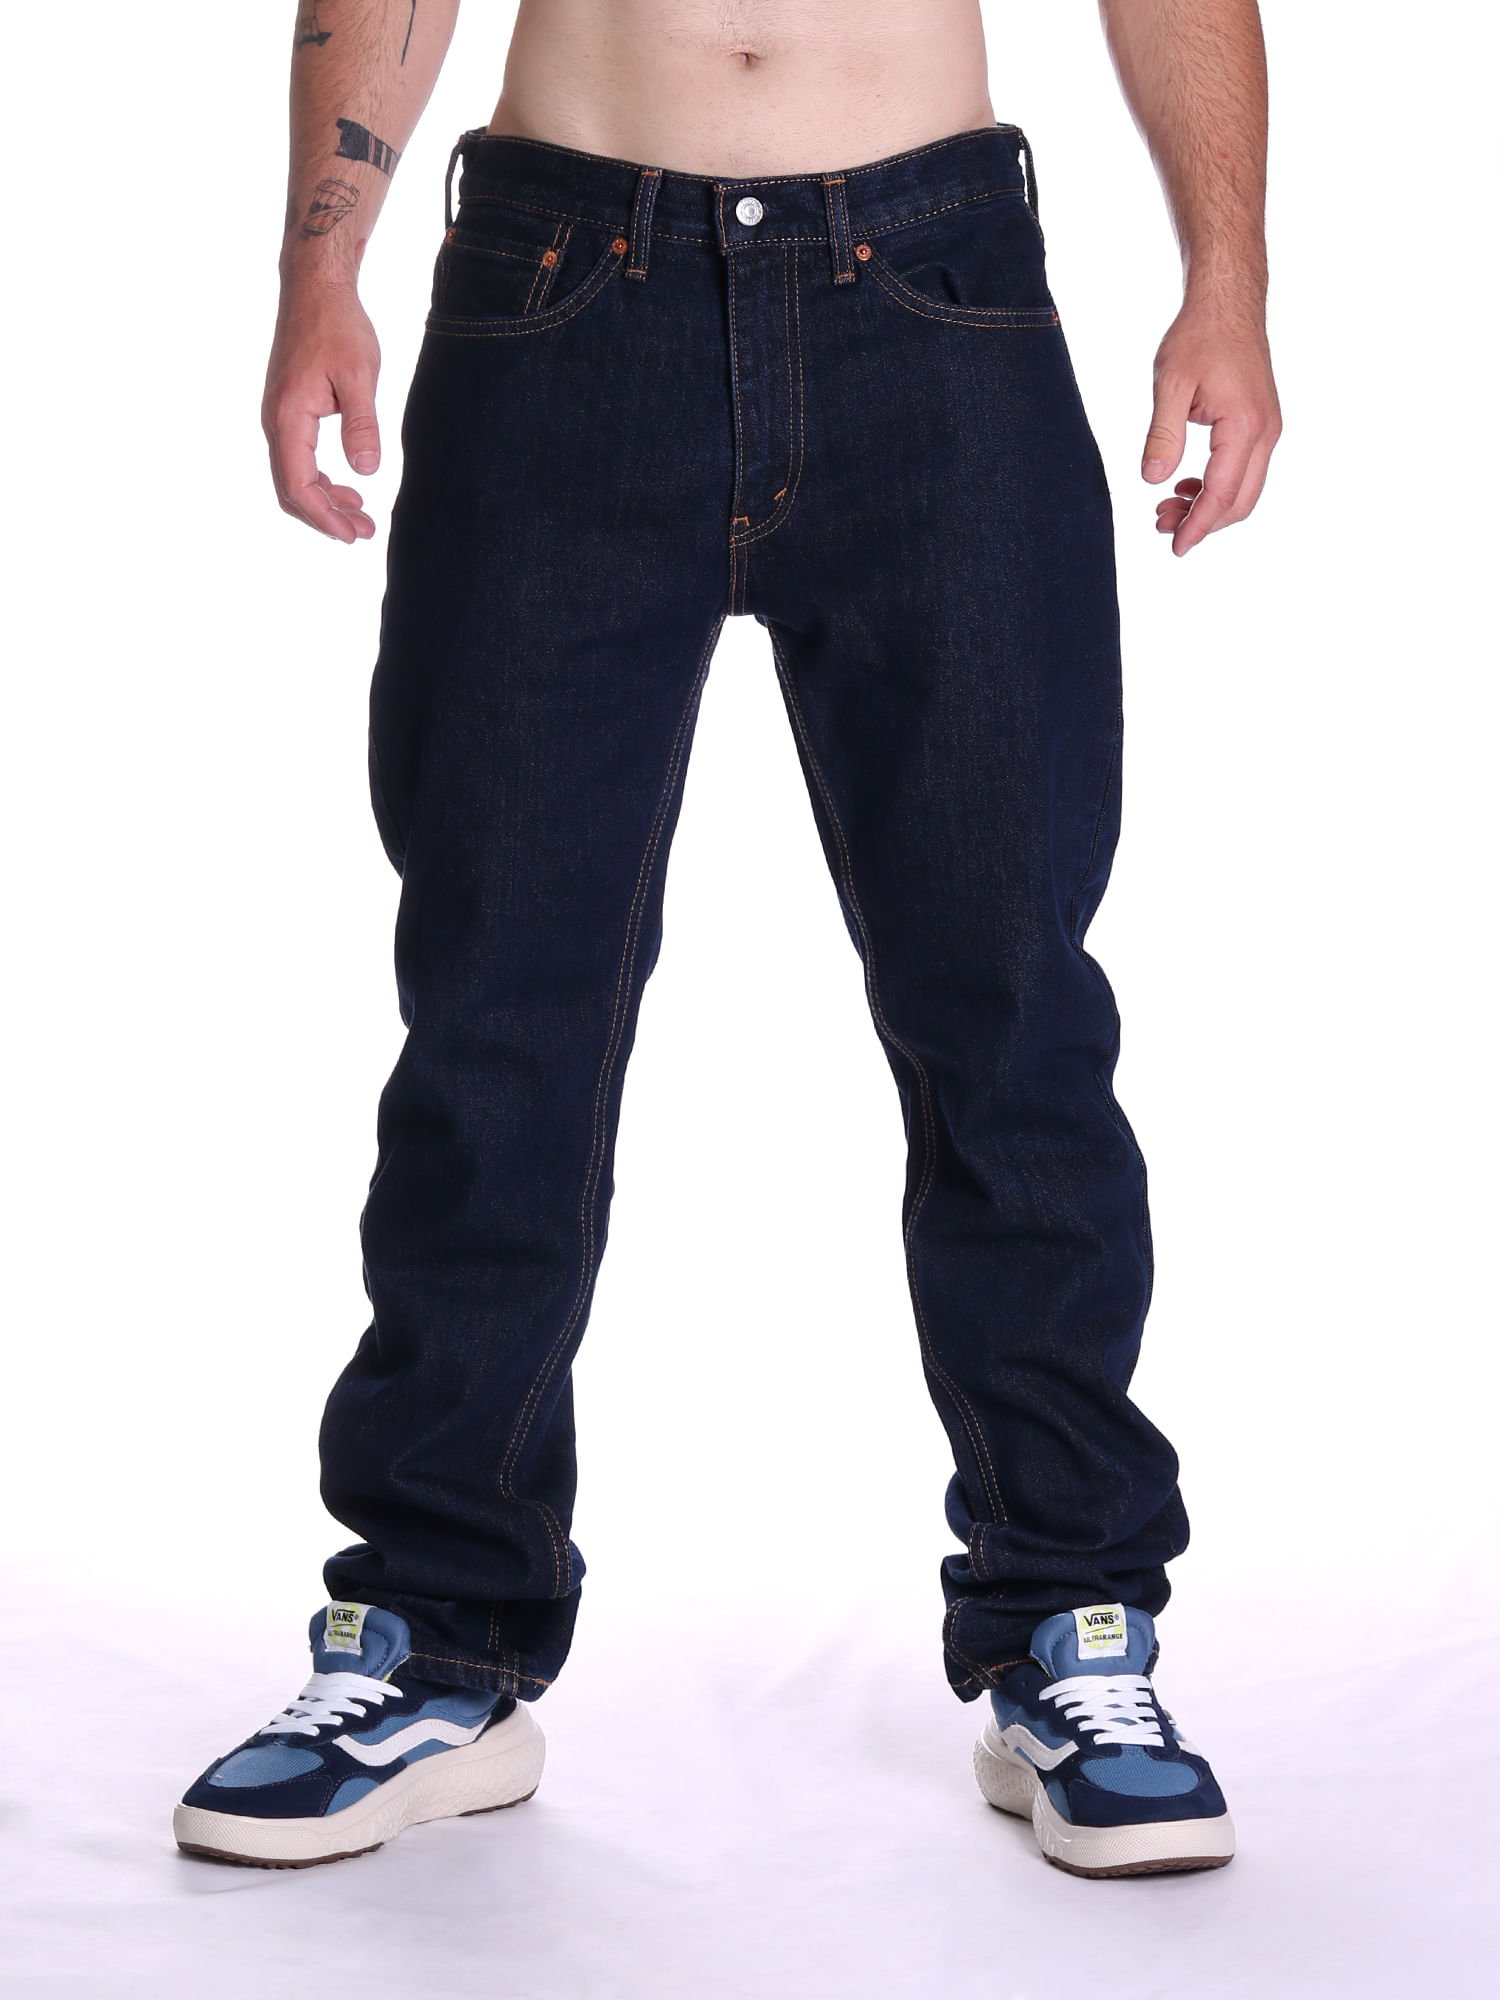 Calça jeans levi's 501 original fit - BaliShoes